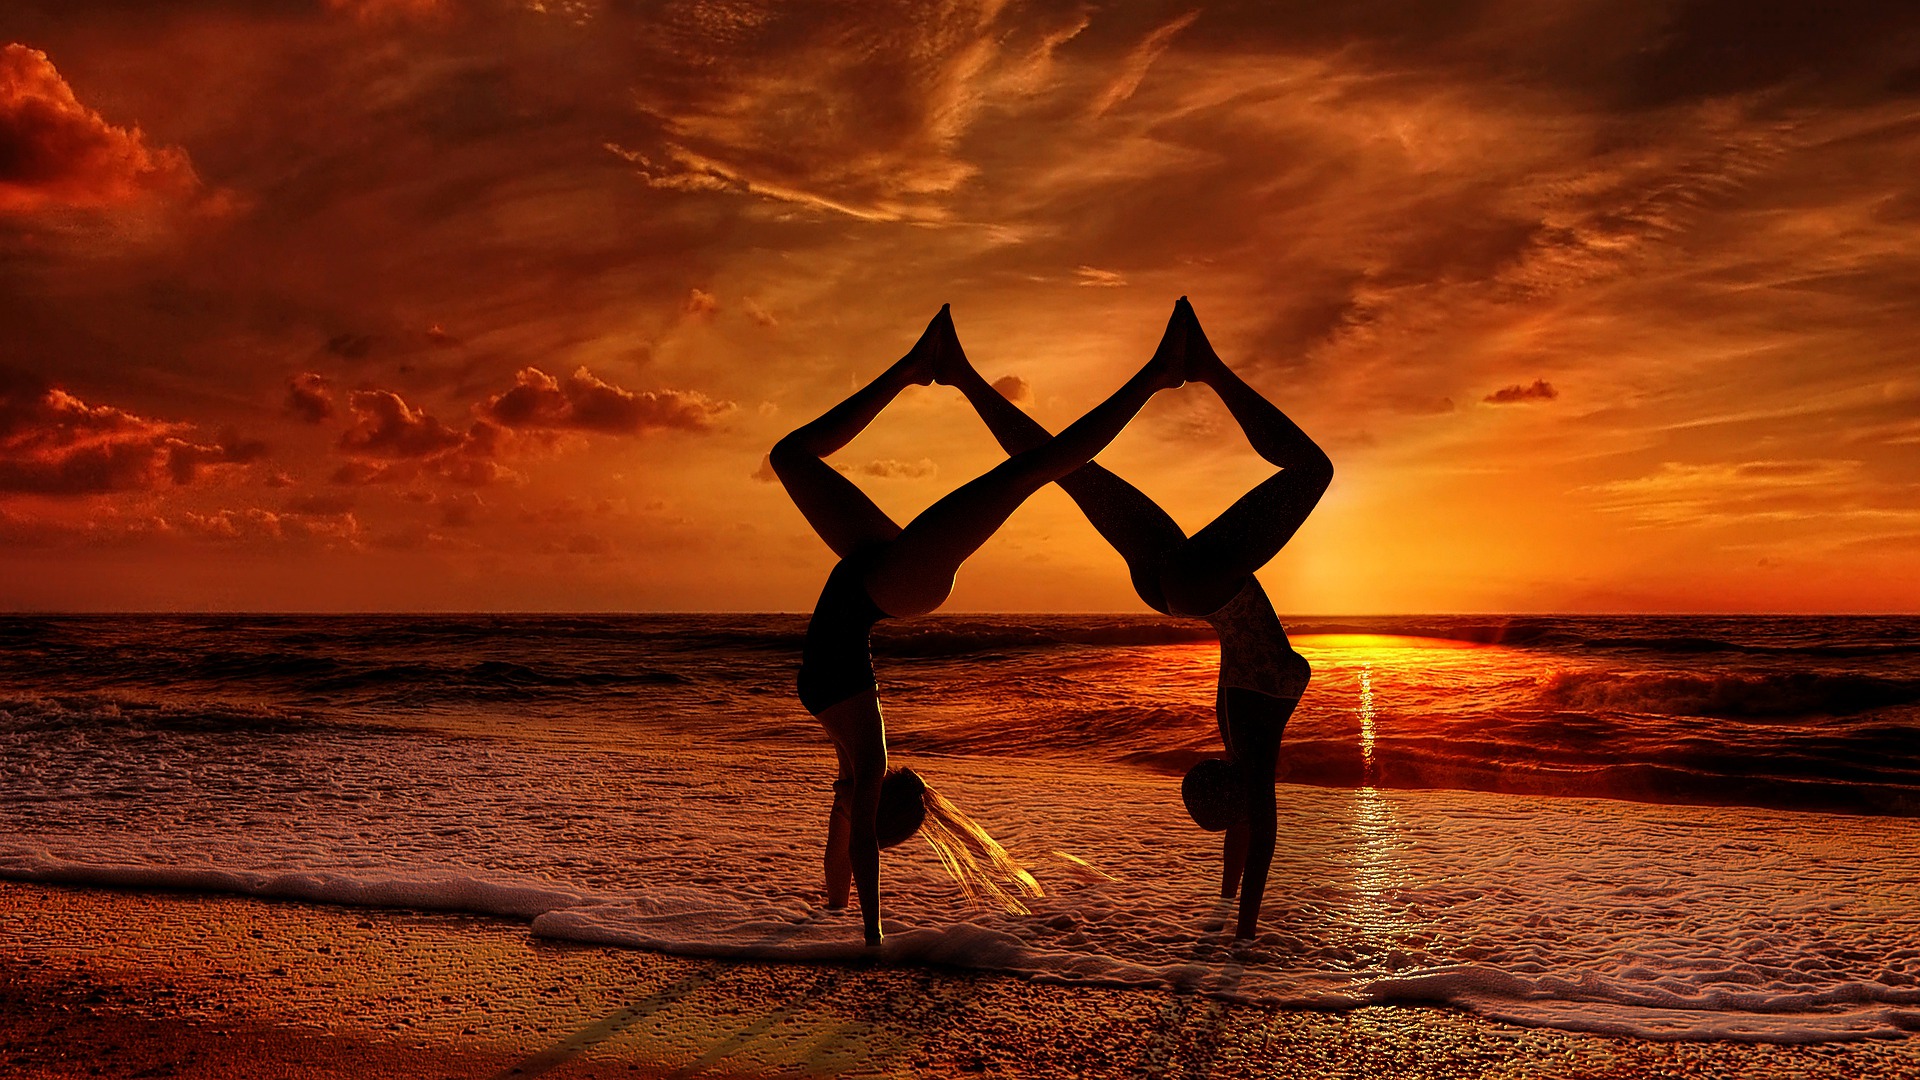 así es como hacer yoga en pareja puede fortalecer tu relación